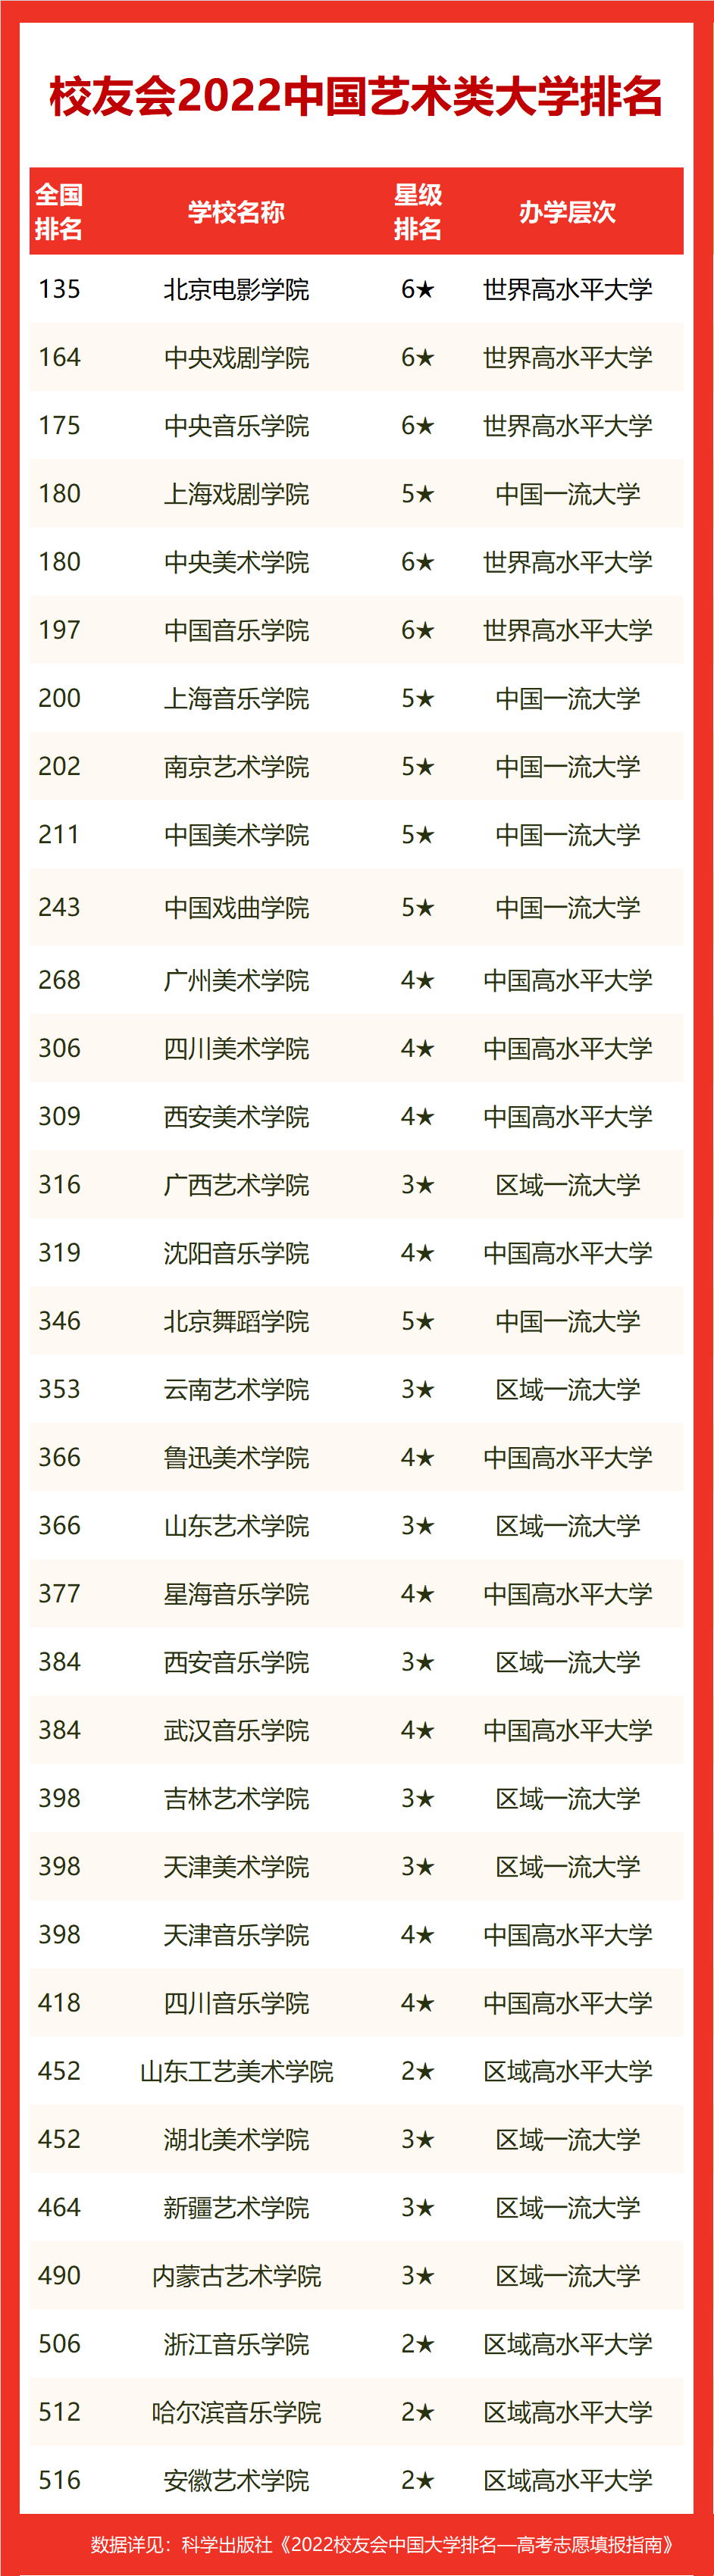 2022年艺术类大学排名 (http://www.hnyixiao.com/) 教育资讯 第1张